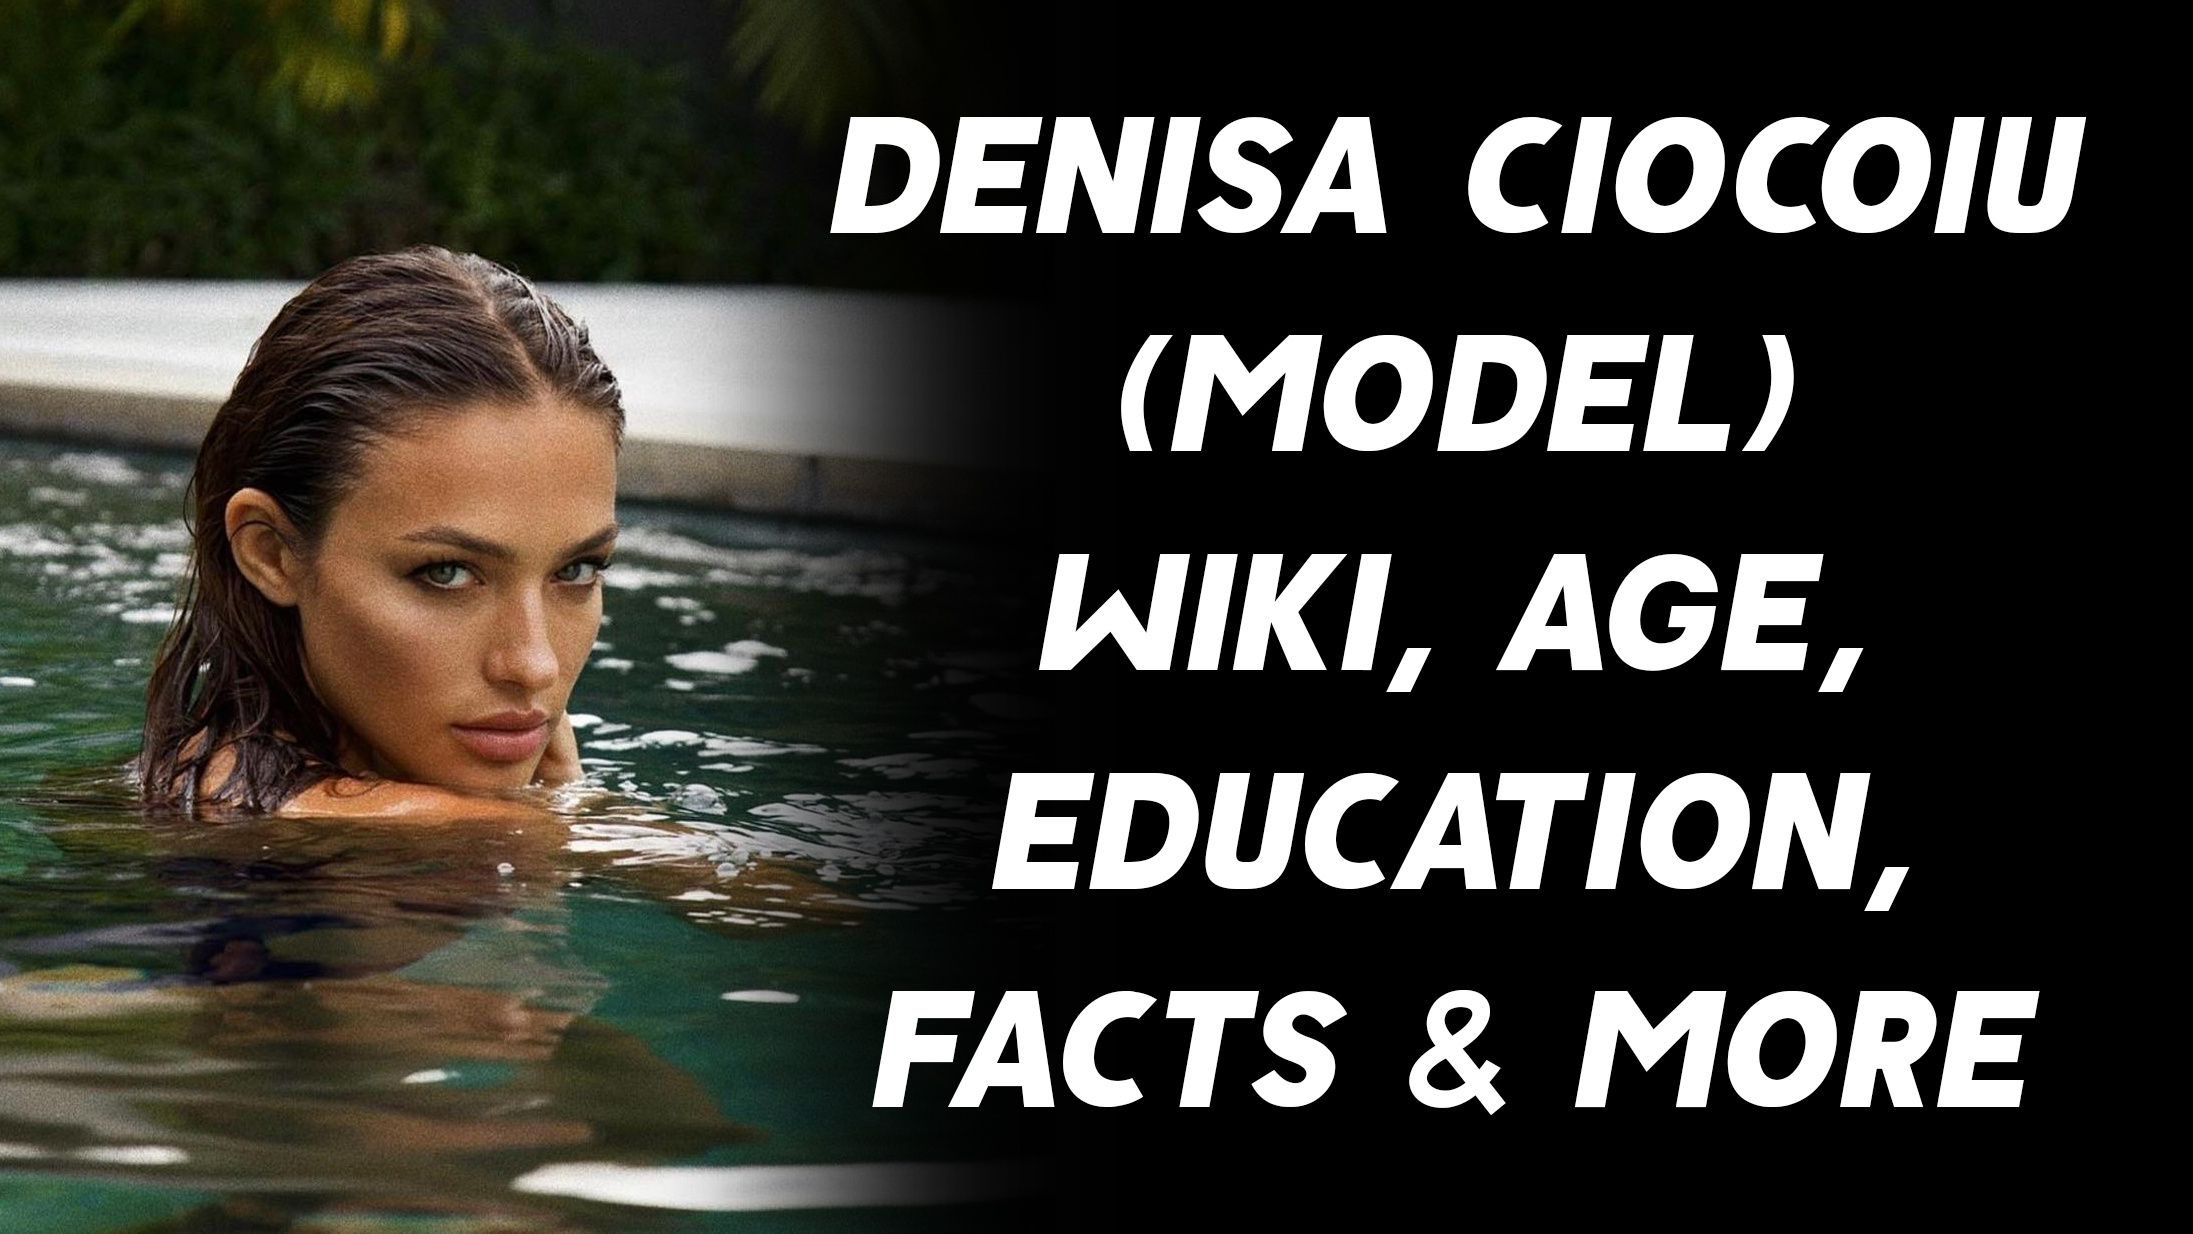 Denisa Ciocoiu (Model) Wiki, Age, Education, Facts & More 1